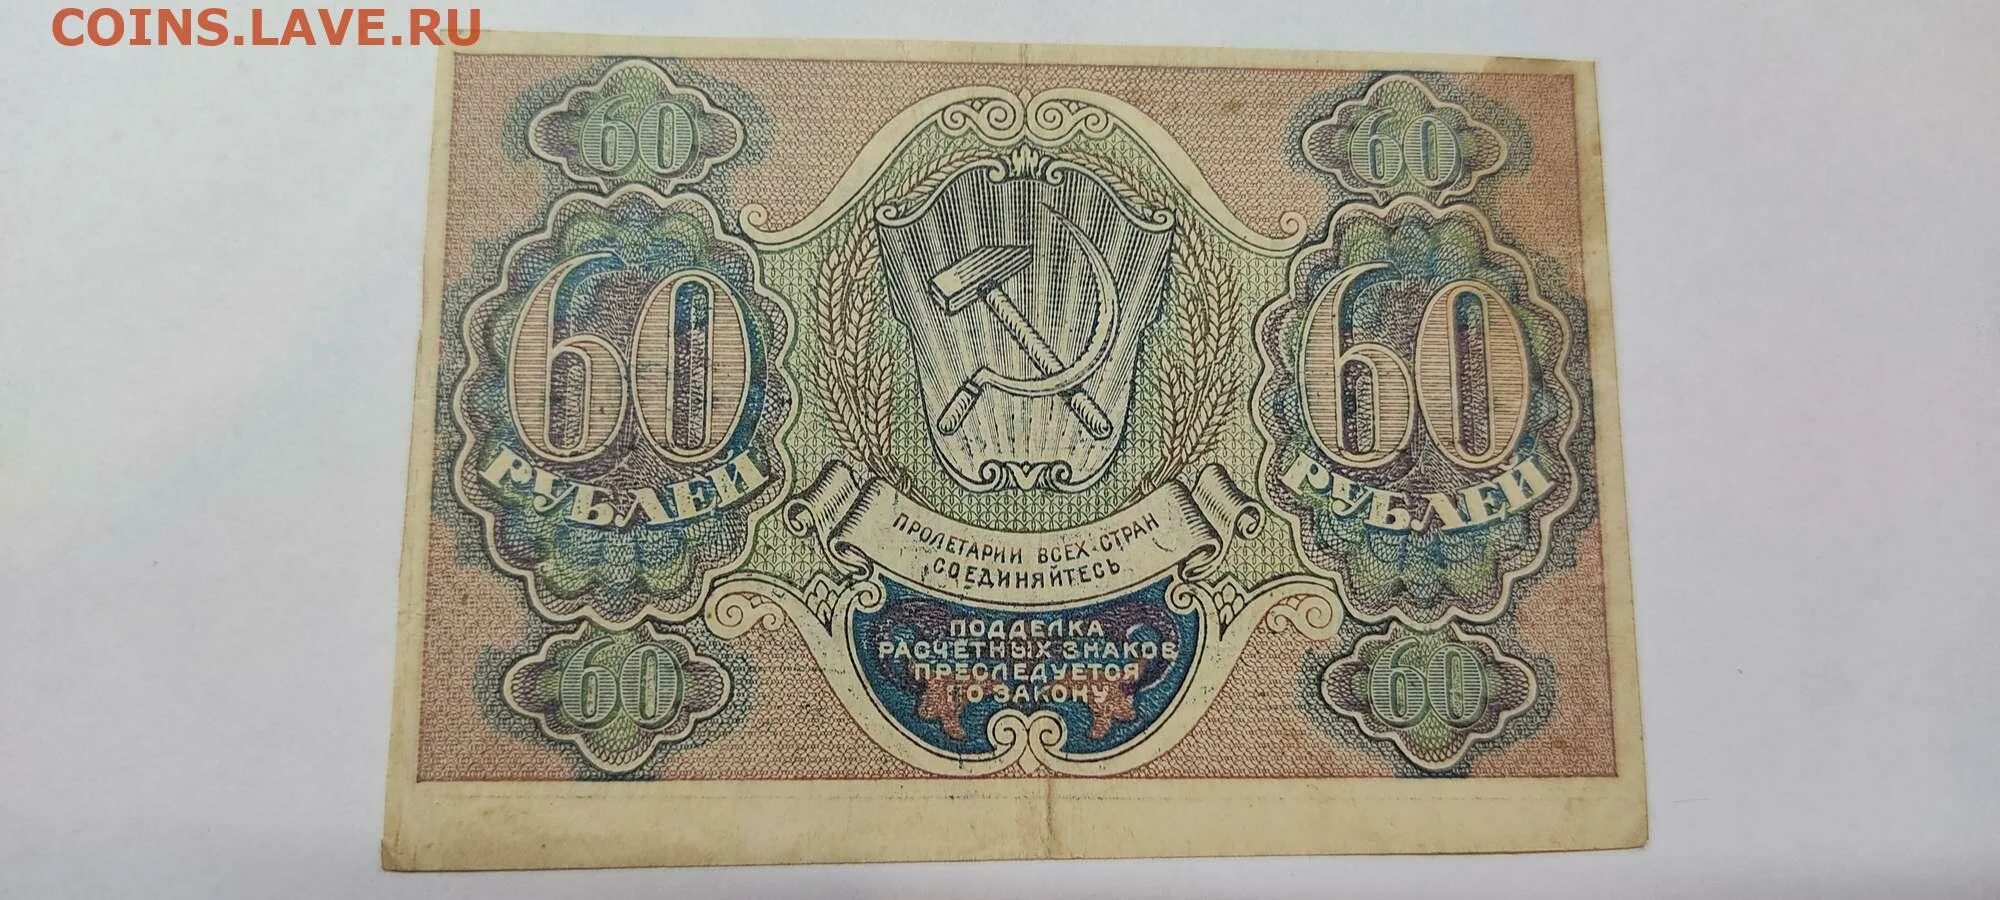 27 60 в рублях. 60 Рублей. Расчетный знак 60 рублей. Рубли в 60-х годах XIX В. 60 Рублей фото.